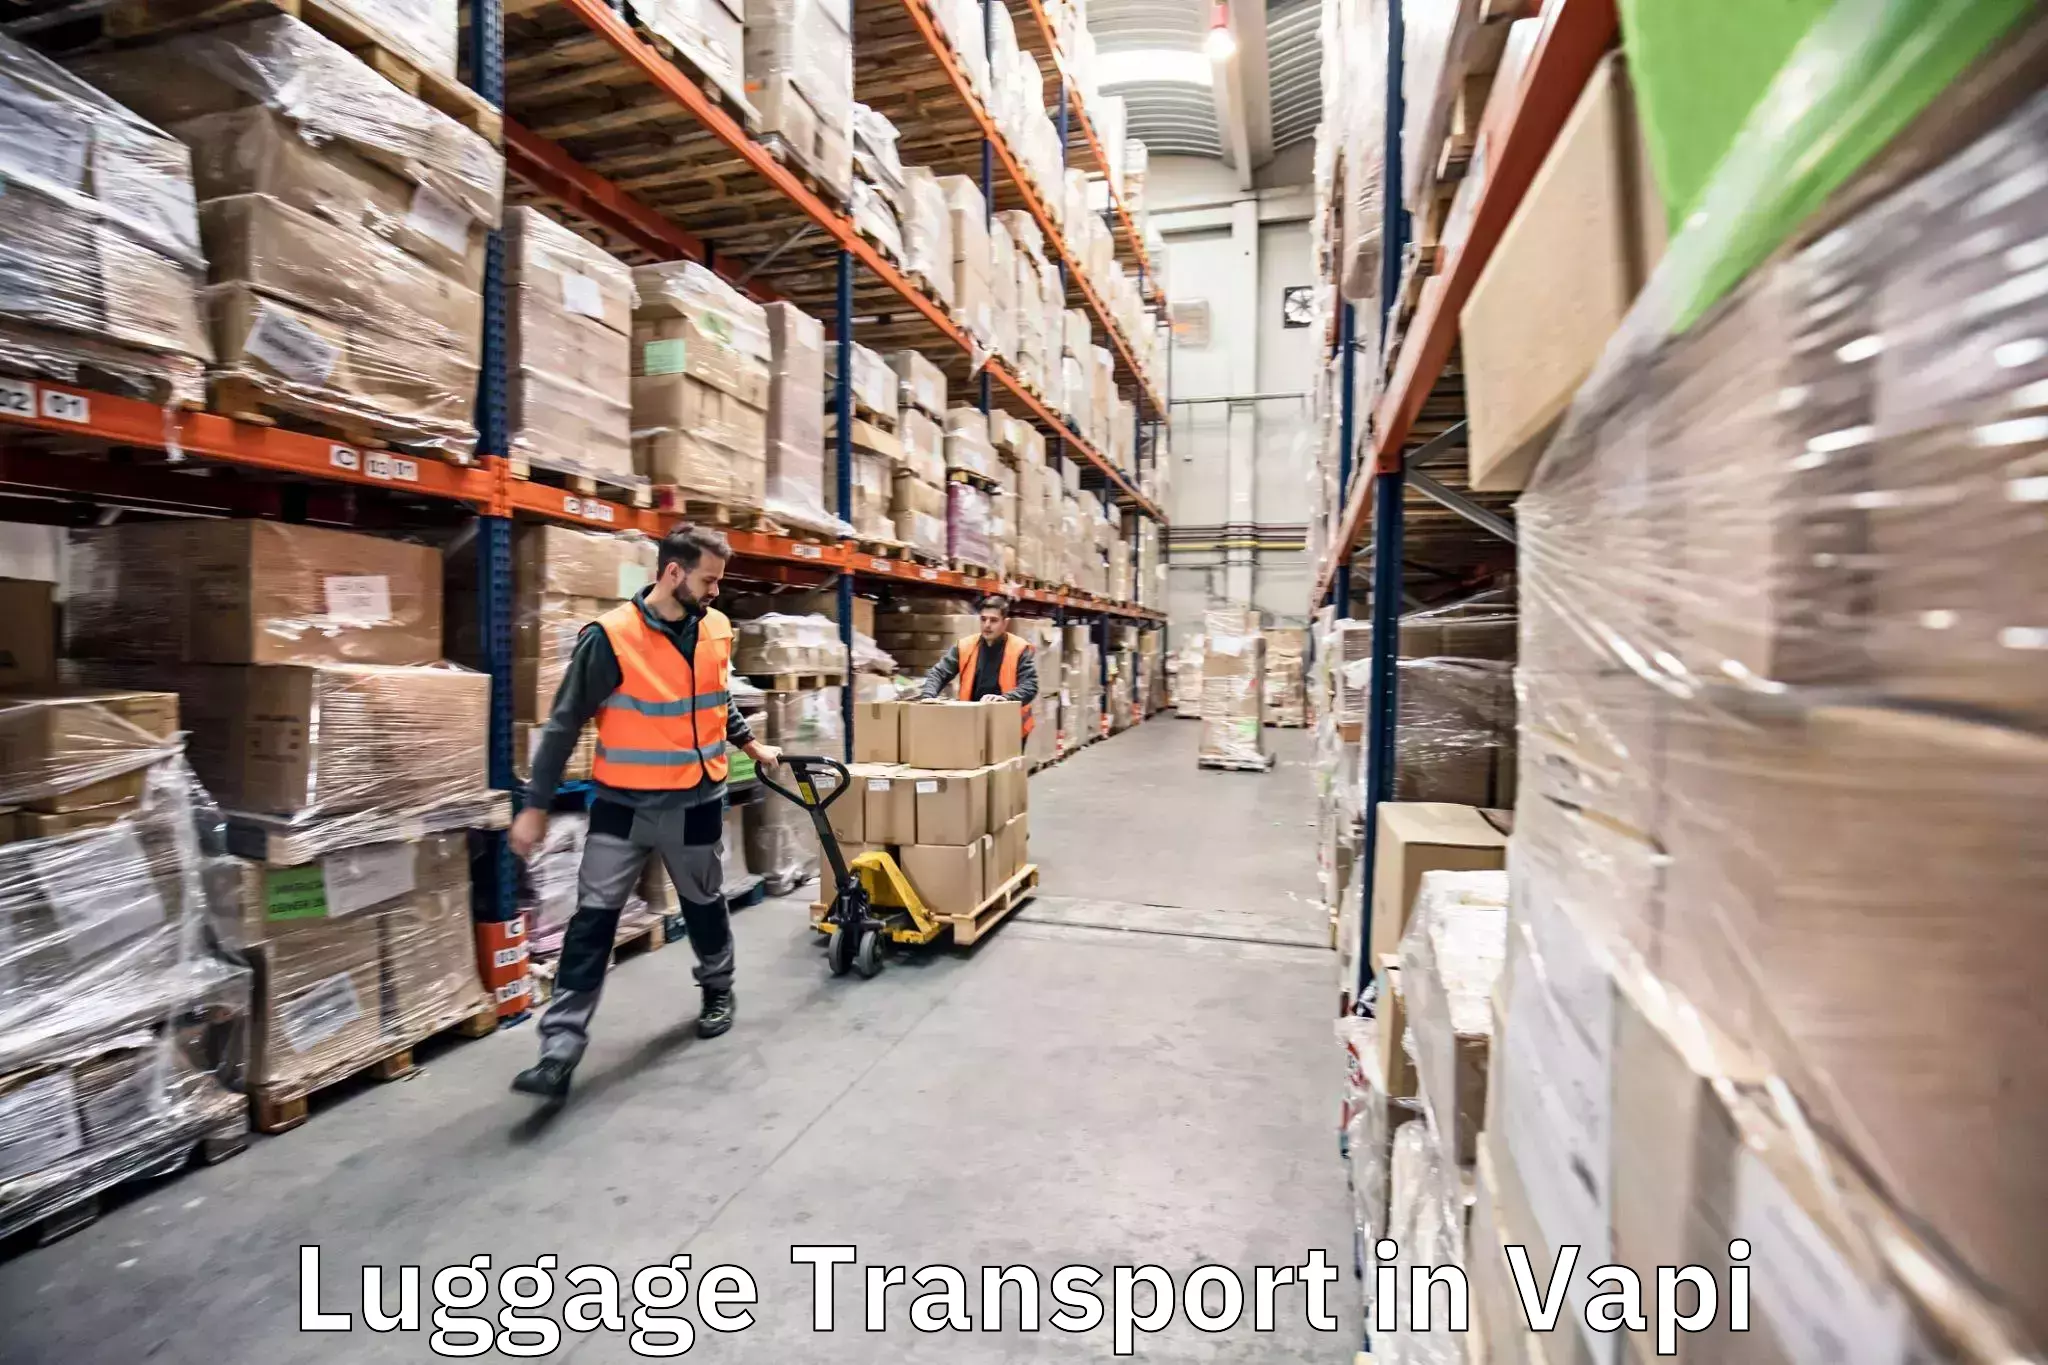 Baggage transport technology in Vapi